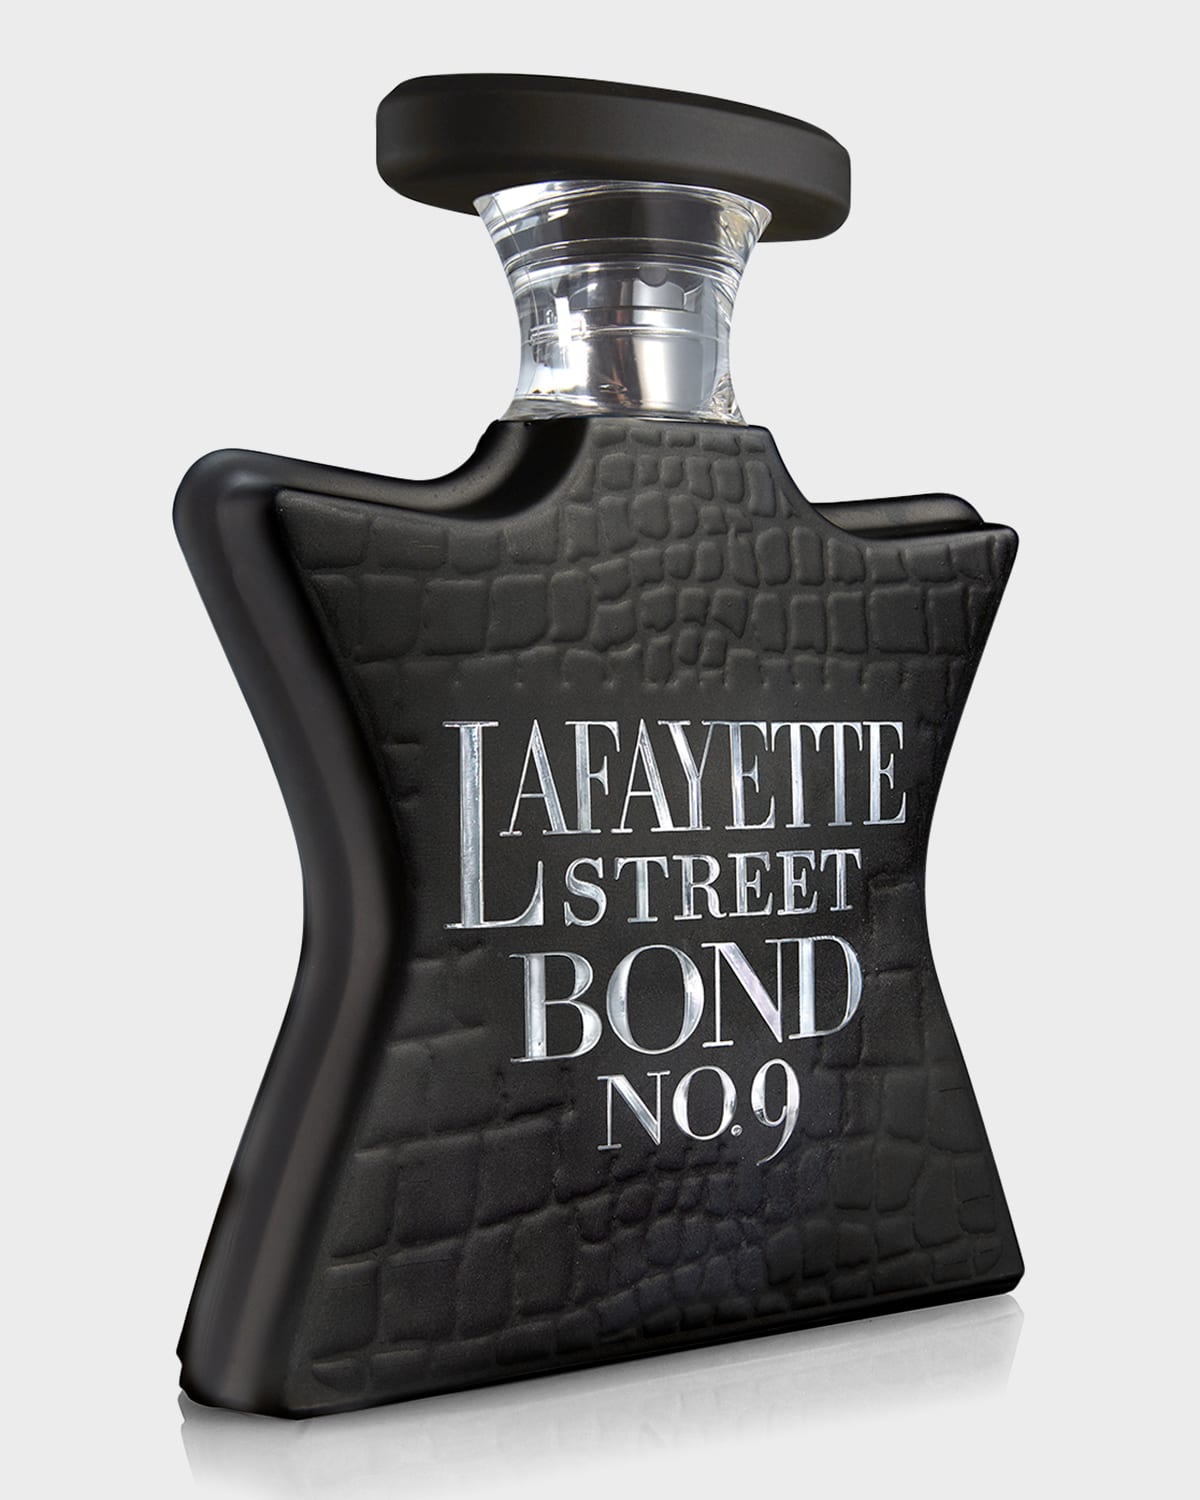 Lafayette Street Eau de Parfum, 3.4 oz.